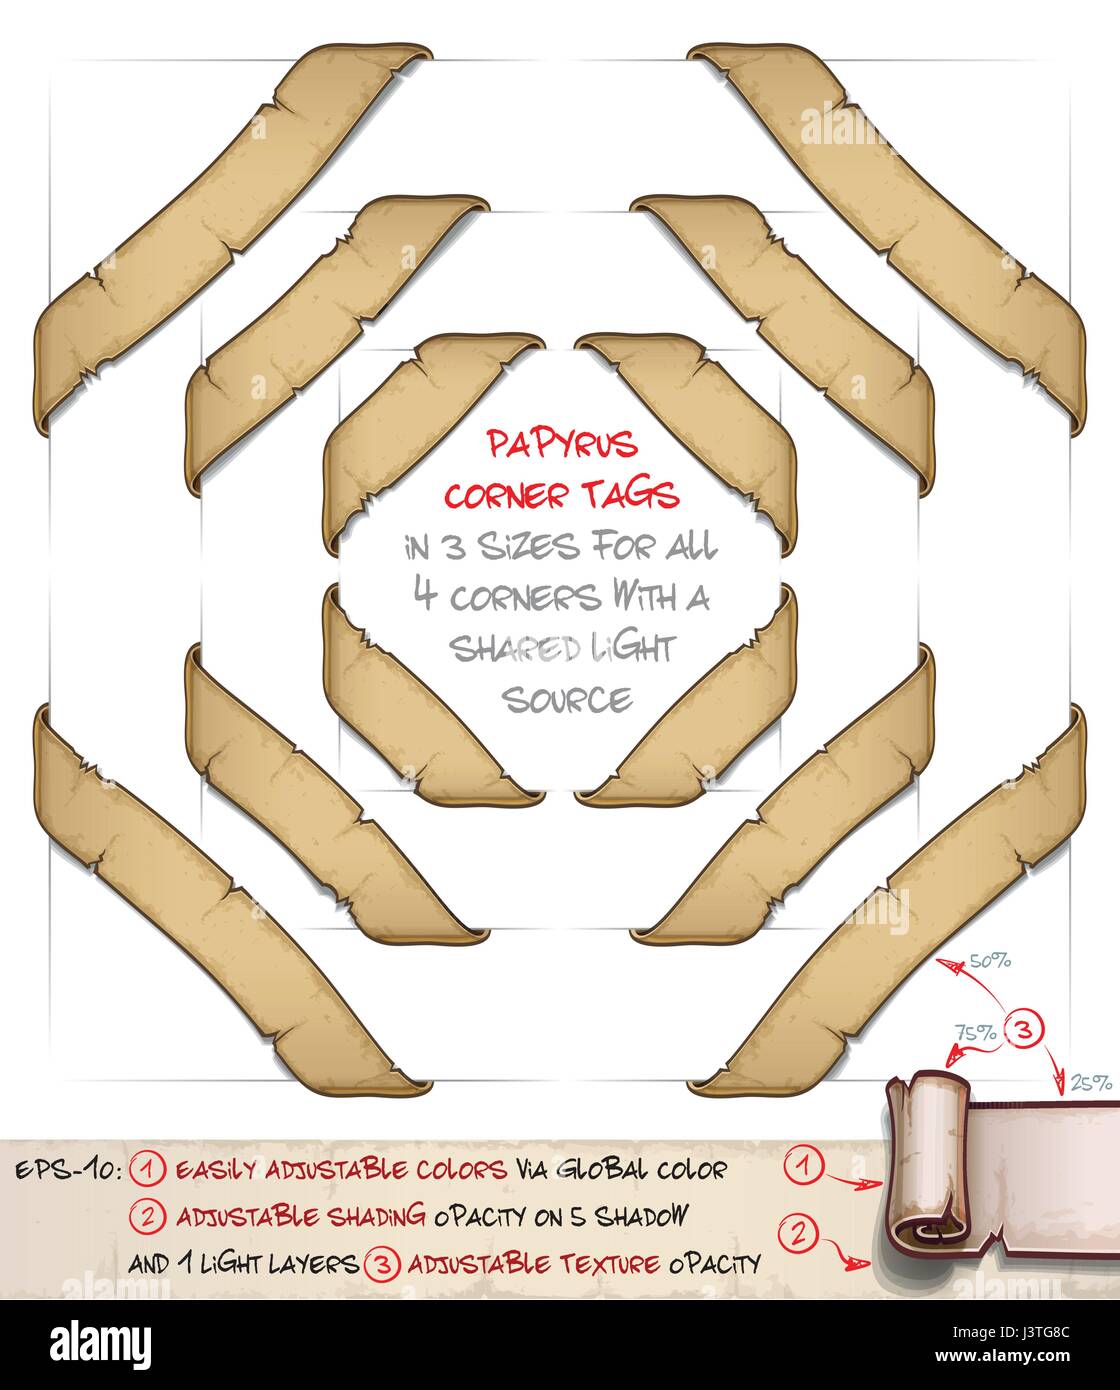 Vettore illustrazione del fumetto di età compresa tra vecchio papiro o pergamena corner tag. Set di 3 dimensioni dai 4 angoli condividono la stessa fonte di luce. Stratificati con precisione un Illustrazione Vettoriale